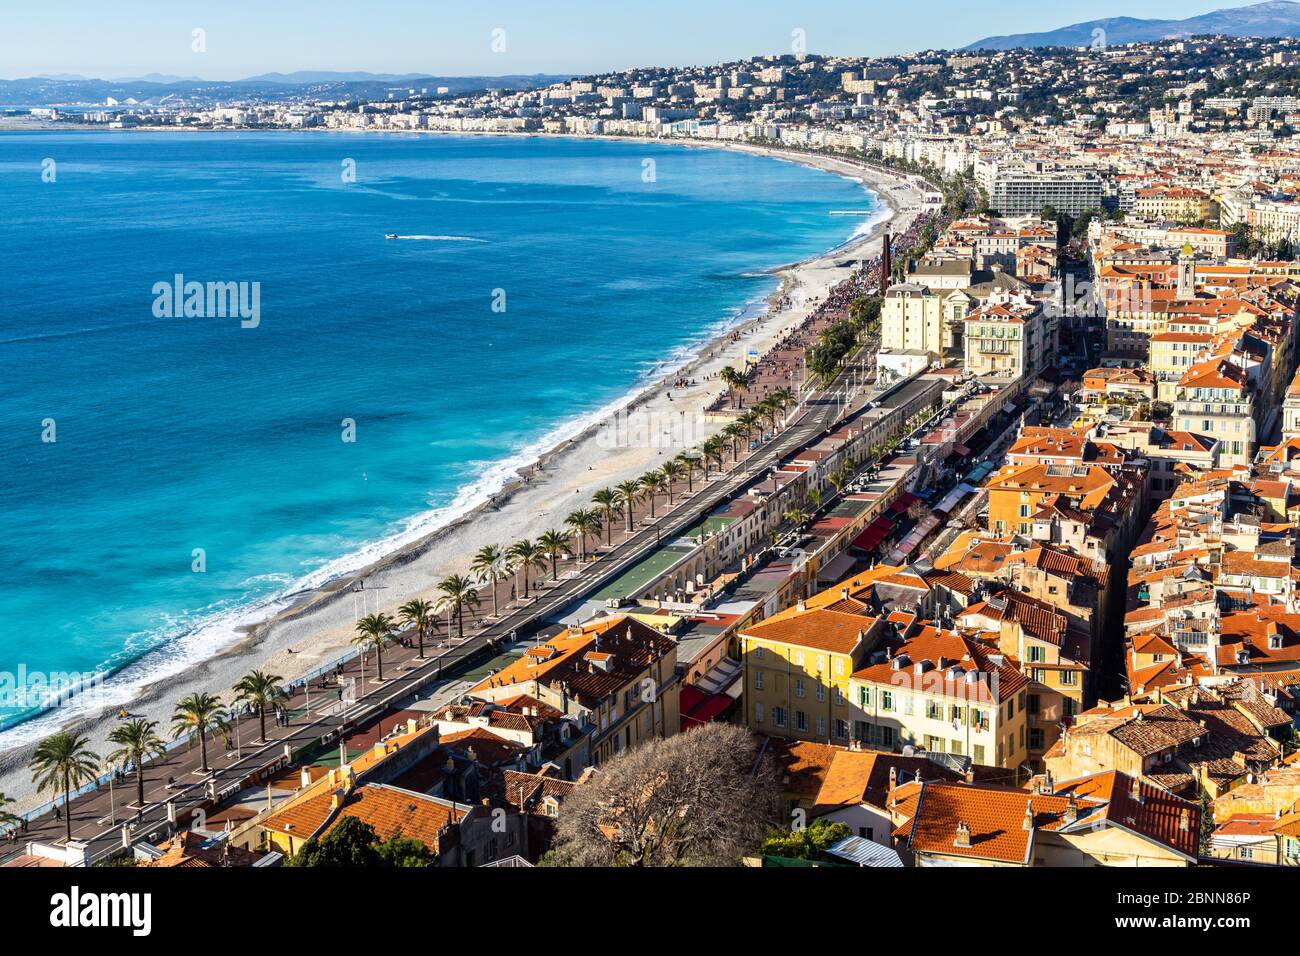 Vue panoramique sur Nice avec la principale promenade du bord de mer, la Promenade des Anglais, la plus célèbre attraction touristique de la ville, la France Banque D'Images